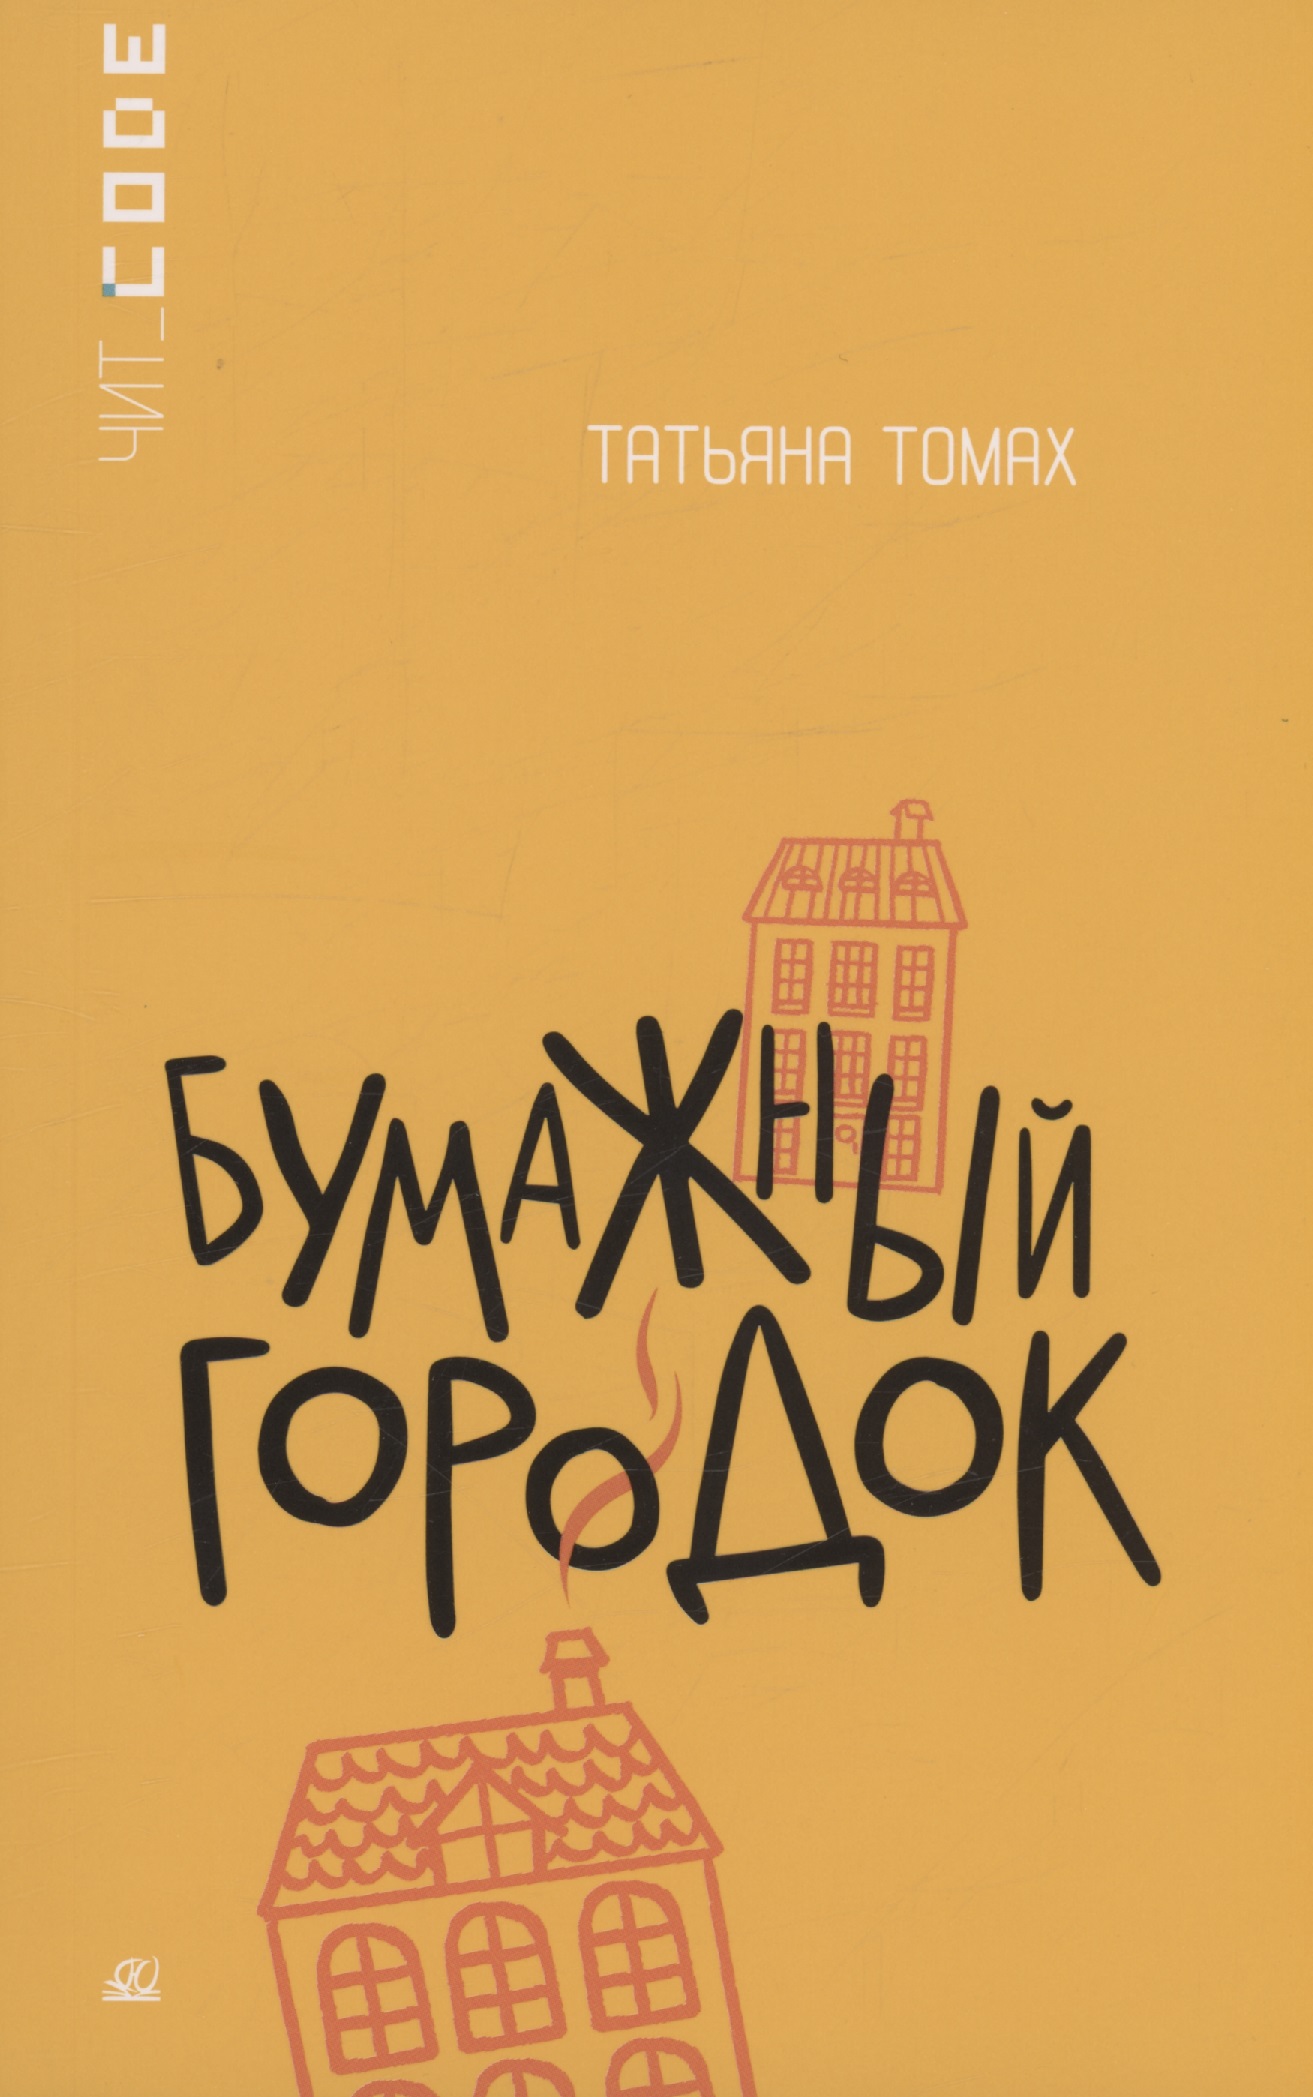 Томах Татьяна - Бумажный городок